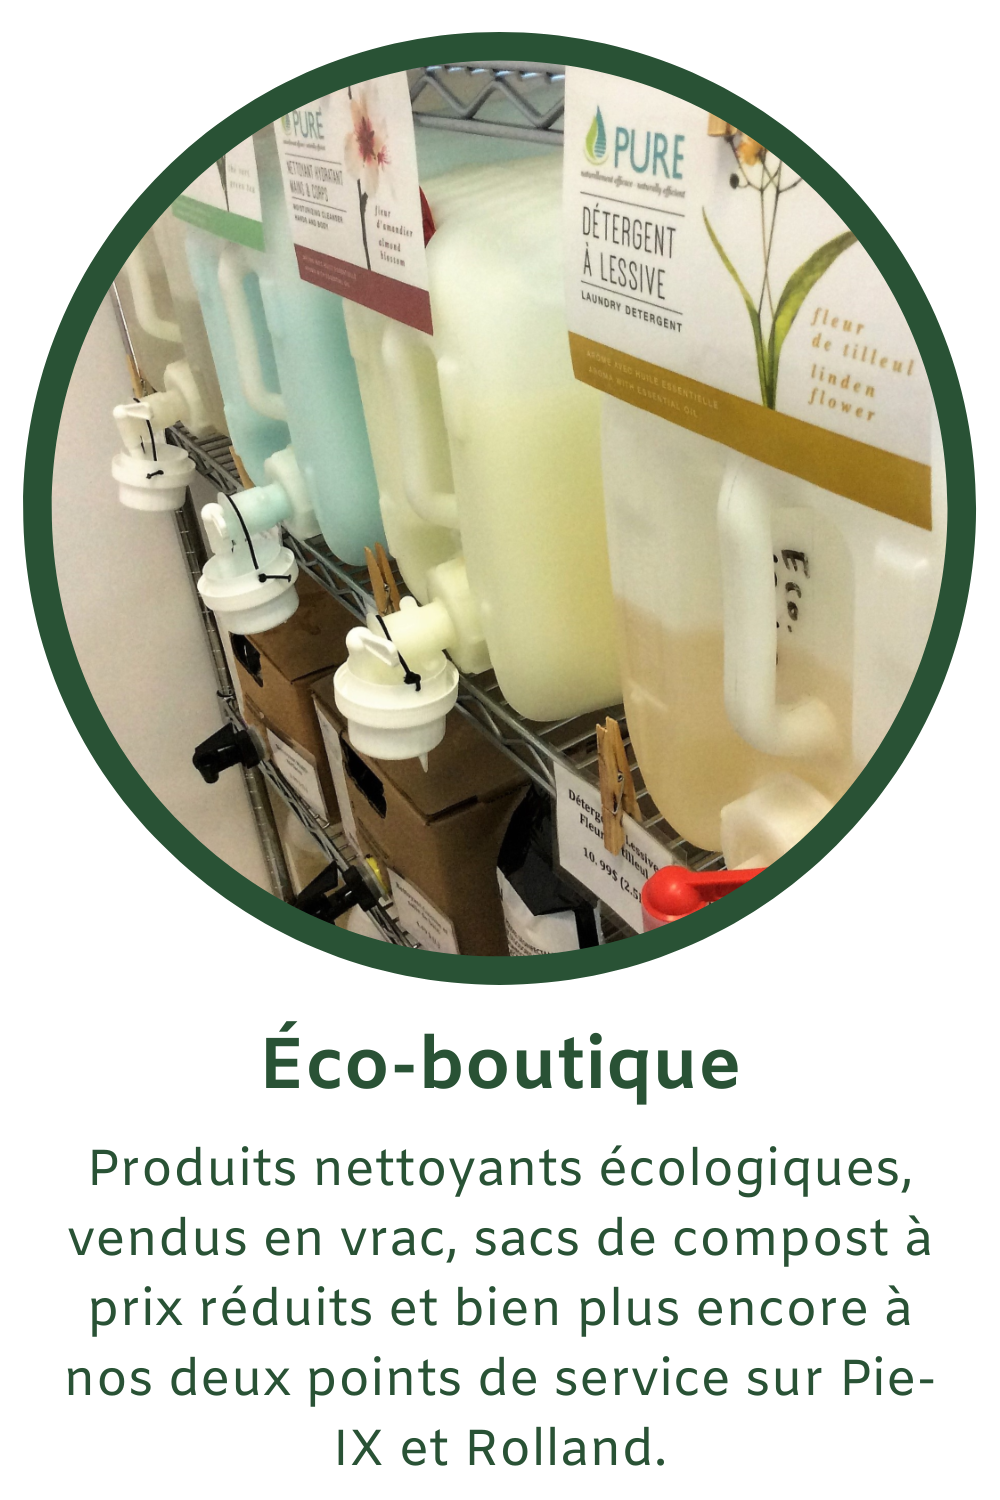 Produits nettoyants écologiques vendu en vrac, sacs de compost à prix réduits et bien plus encore à nos deux points de service sur Pie-IX et sur Rolland!